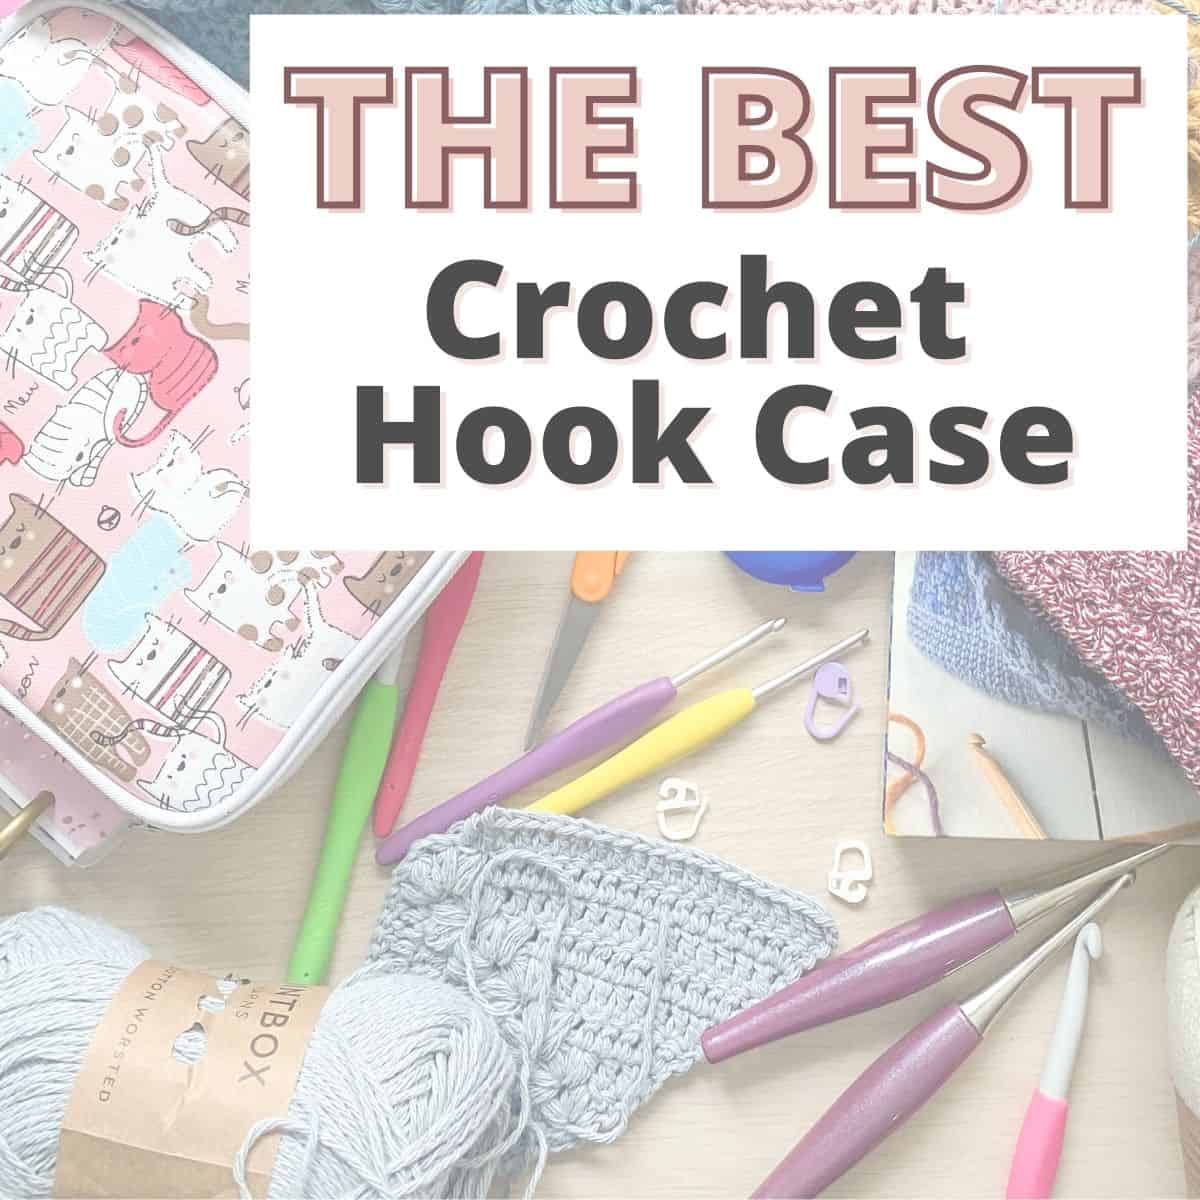 The Best Crochet Hook Sets - Easy Crochet Patterns  Crochet hook set,  Ergonomic crochet hook, Crochet hooks